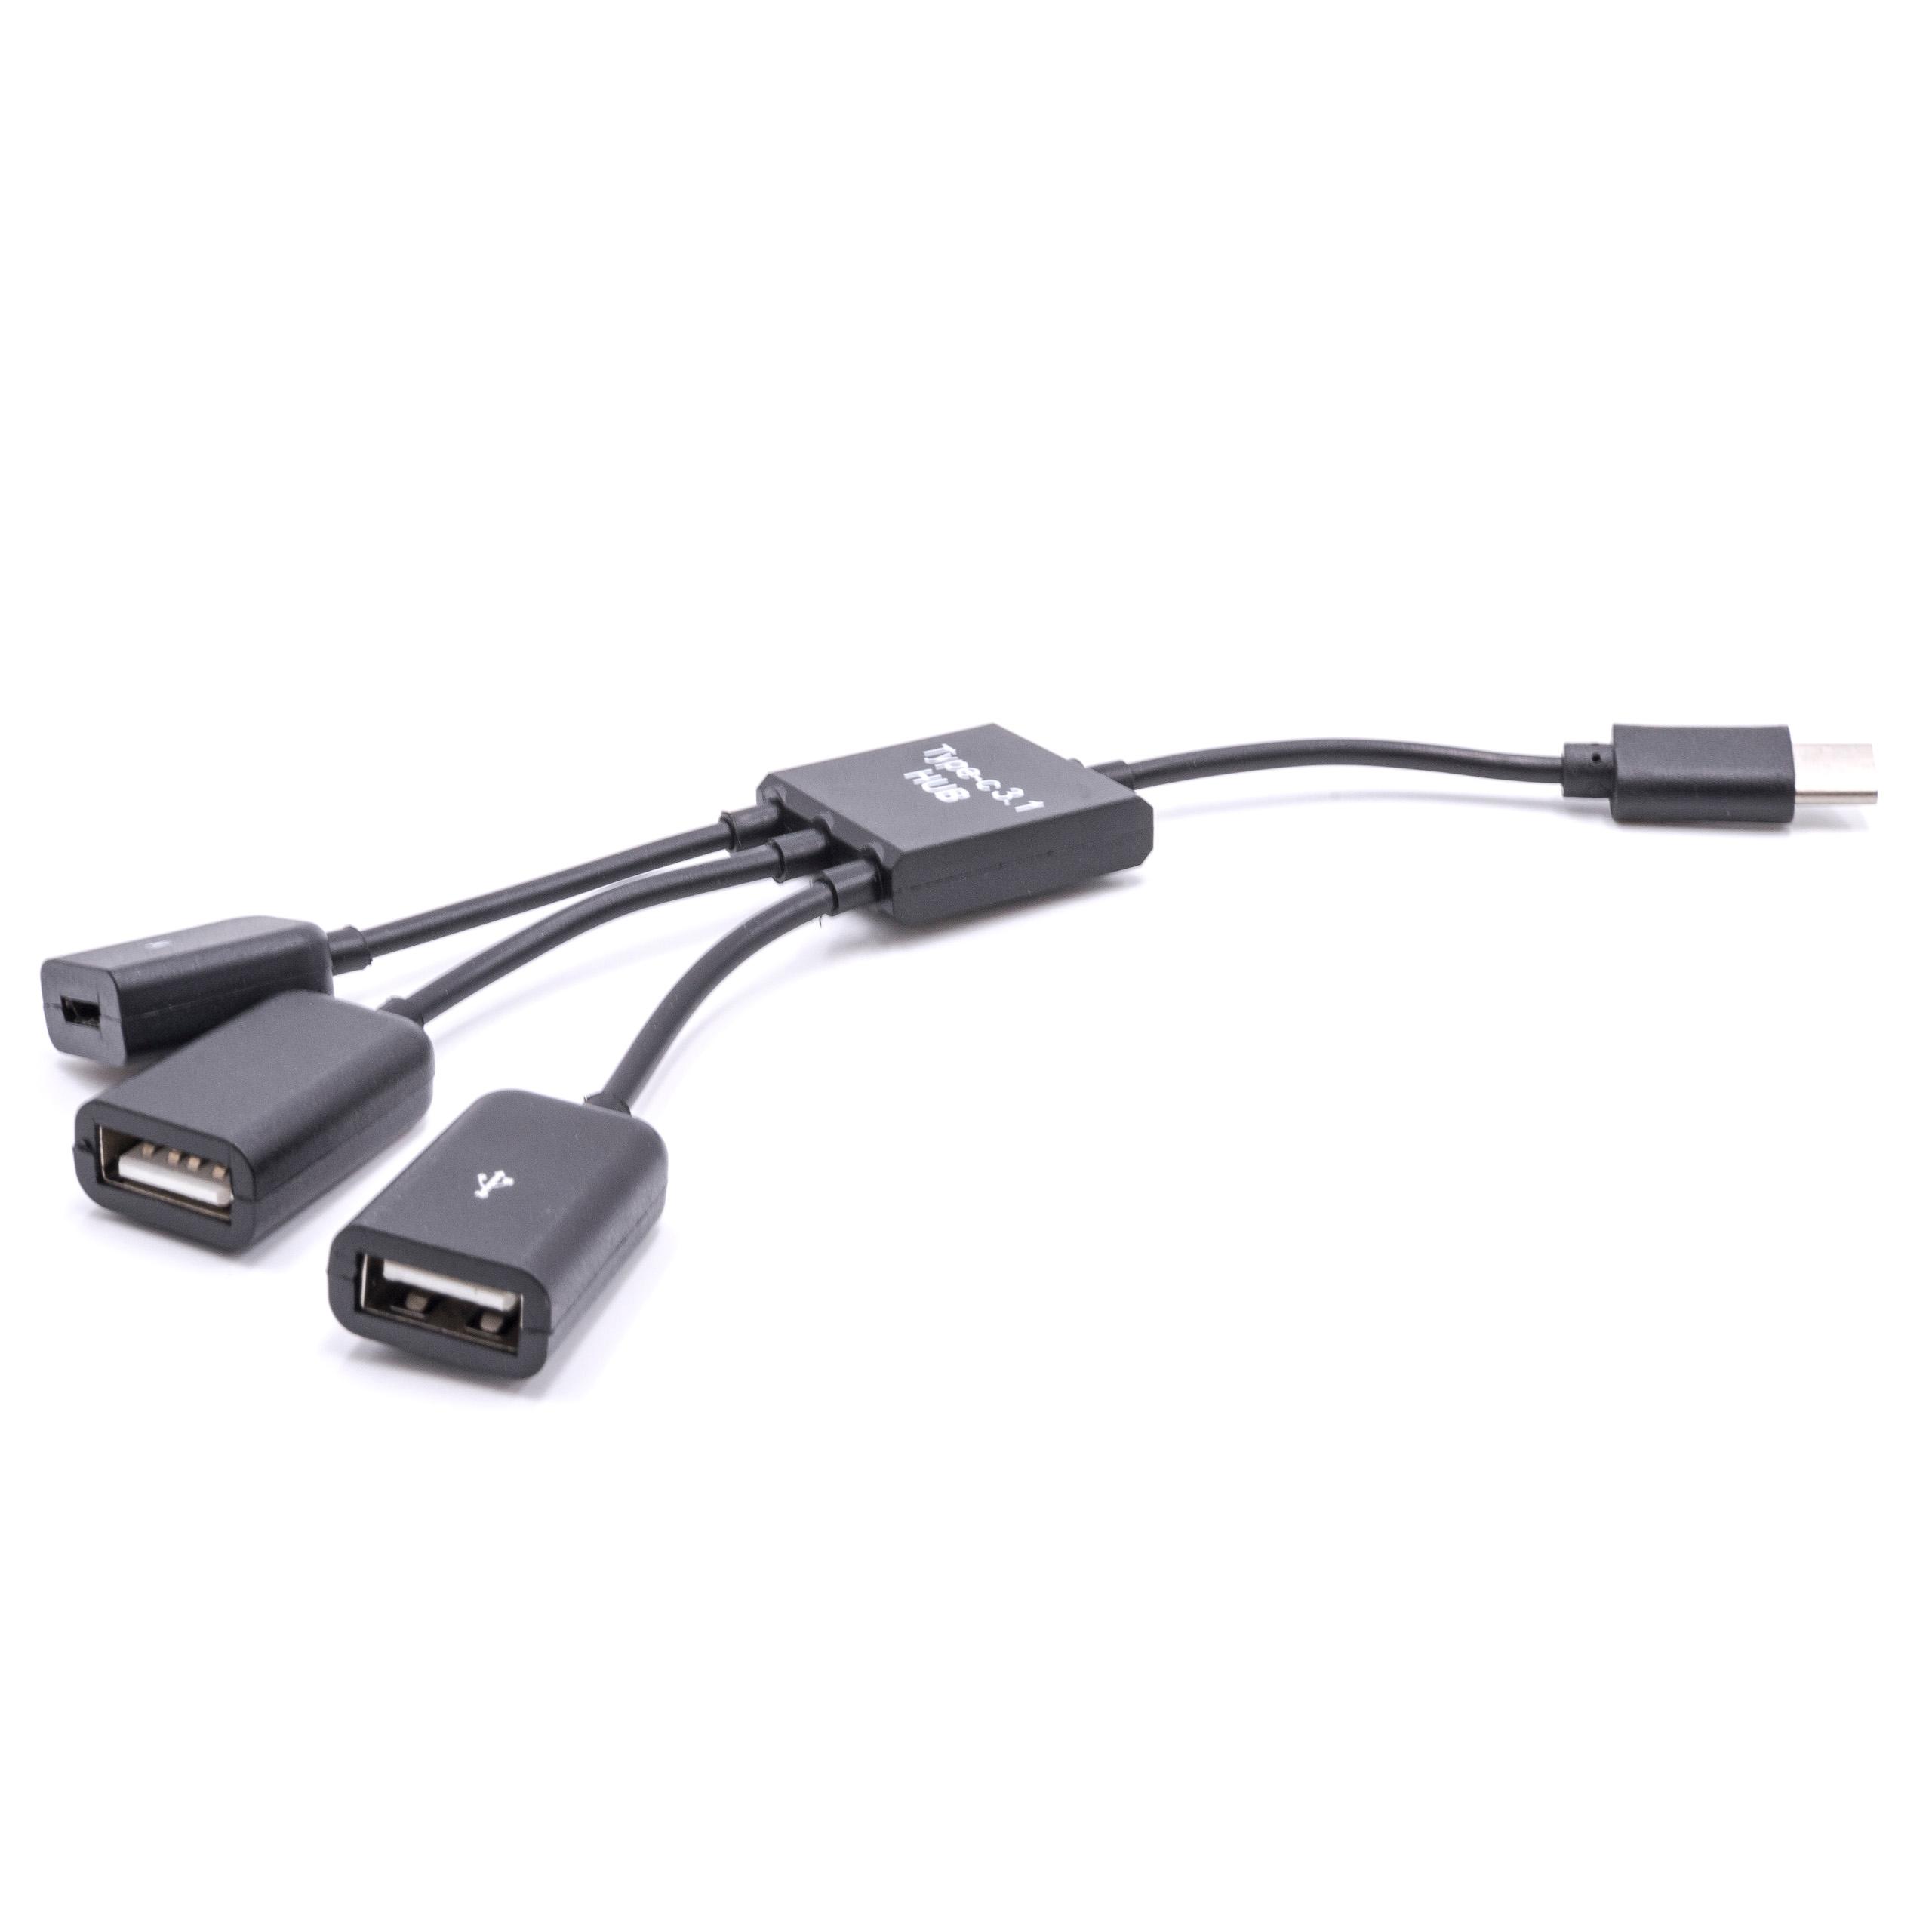 Adaptador OTG USB tipo C (macho) a USB Micro (hembra), 2x USB (hembra) para smartphones, tablets, computadora 